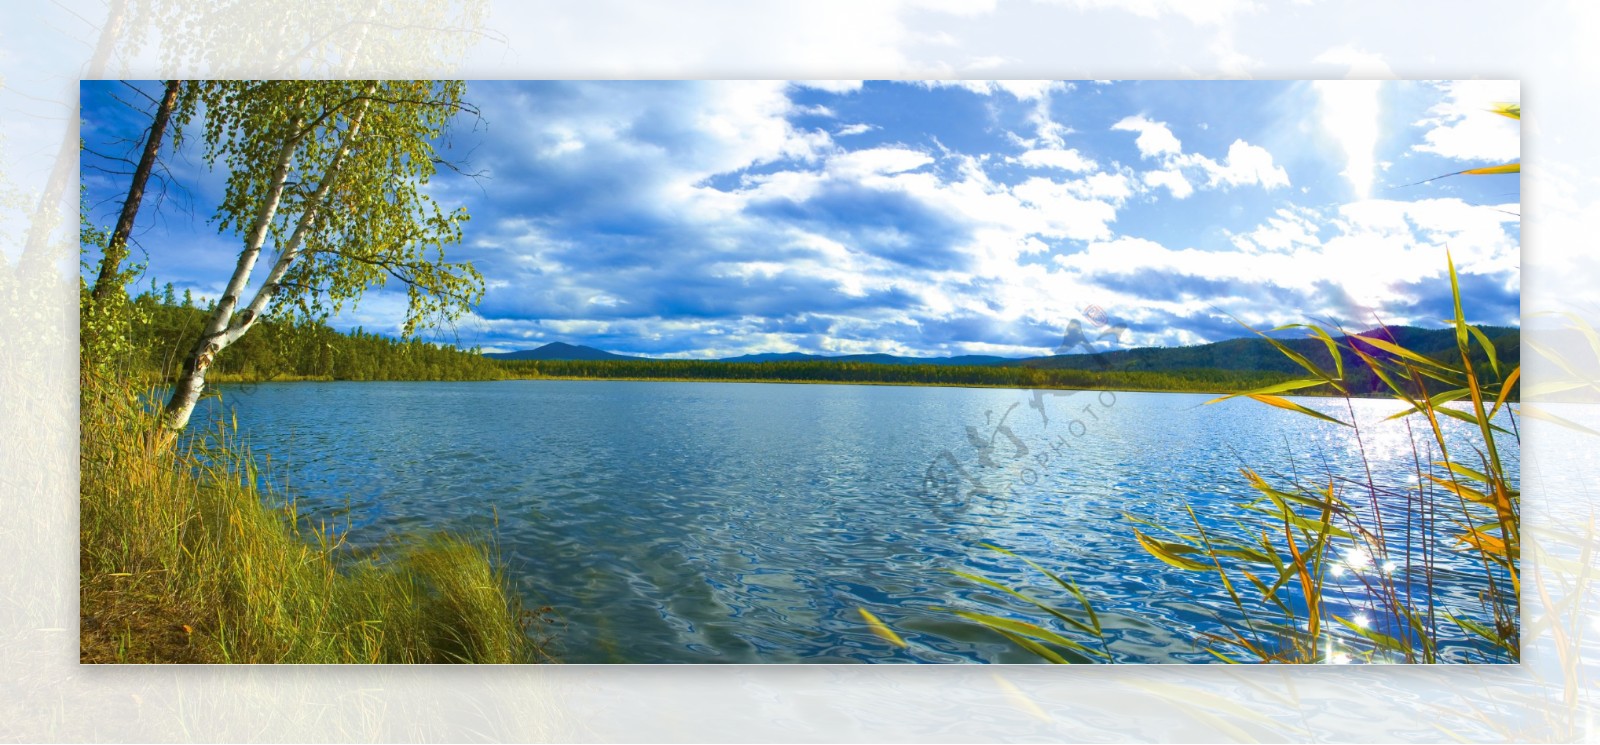 美丽西伯利亚湖面风景图片